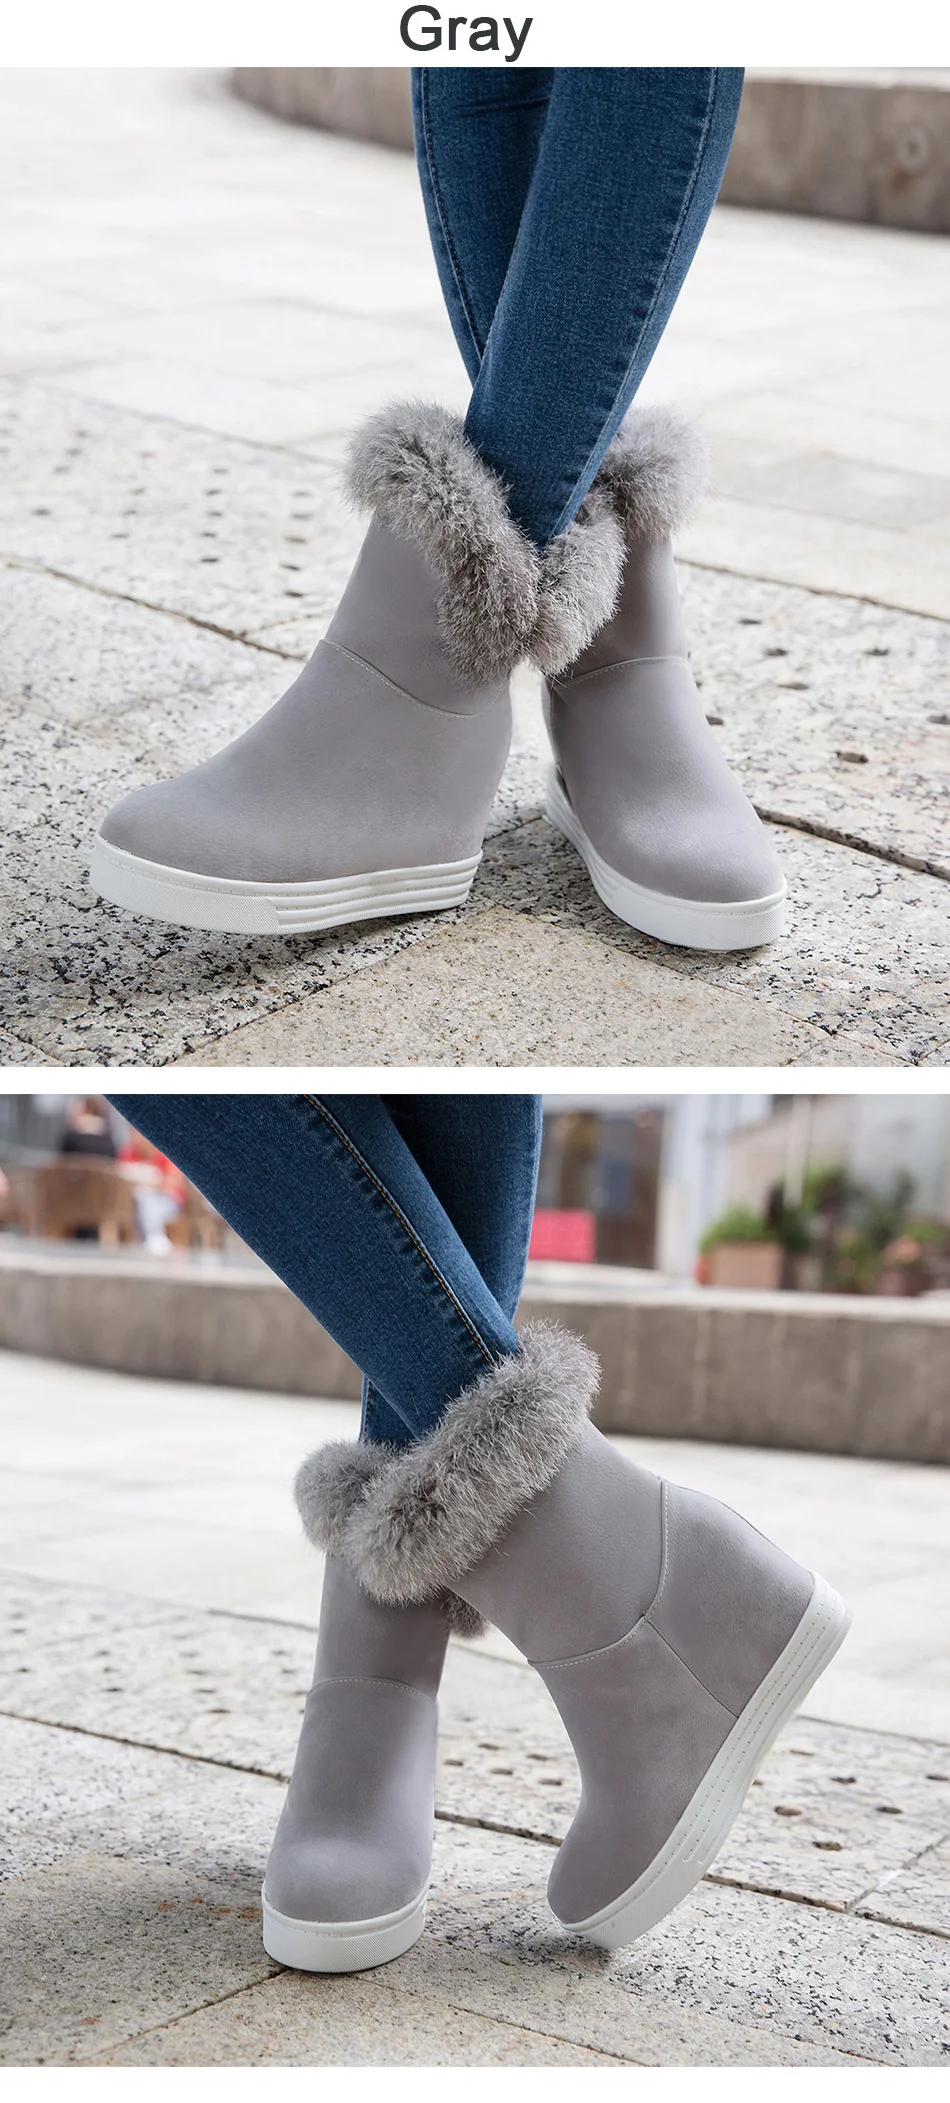 Gdgydh/зимние ботинки хорошего качества женская теплая обувь женские зимние ботинки на платформе и высоком каблуке, модель года, цвет черный, серый, натуральный мех, большой размер 43